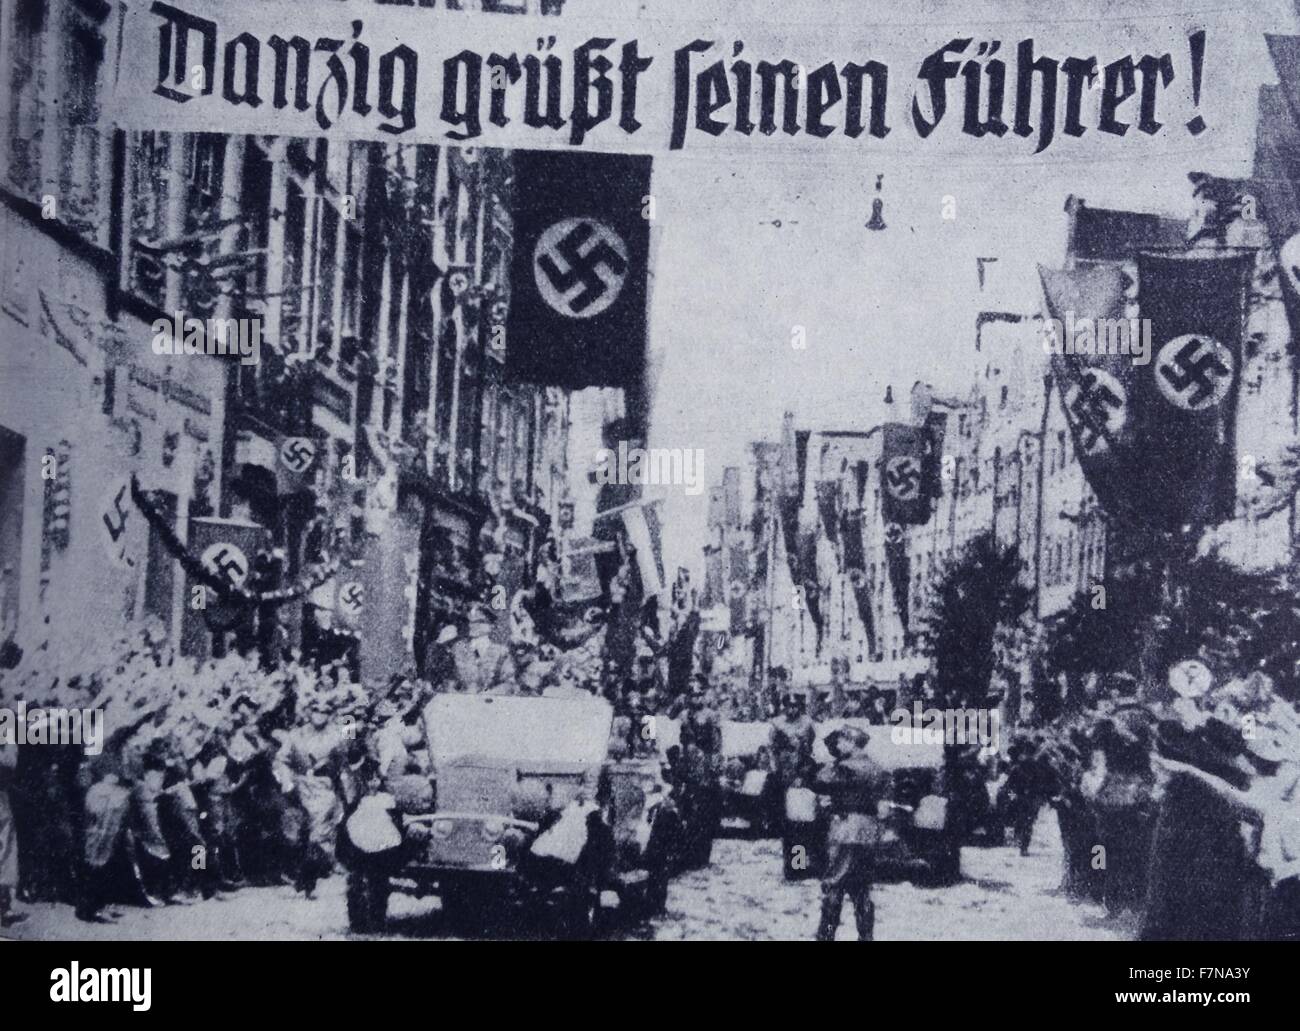 Foto von einer Parade in Danzig Gruß Hitler und Nazi-Soldaten. Datierte 1939 Stockfoto